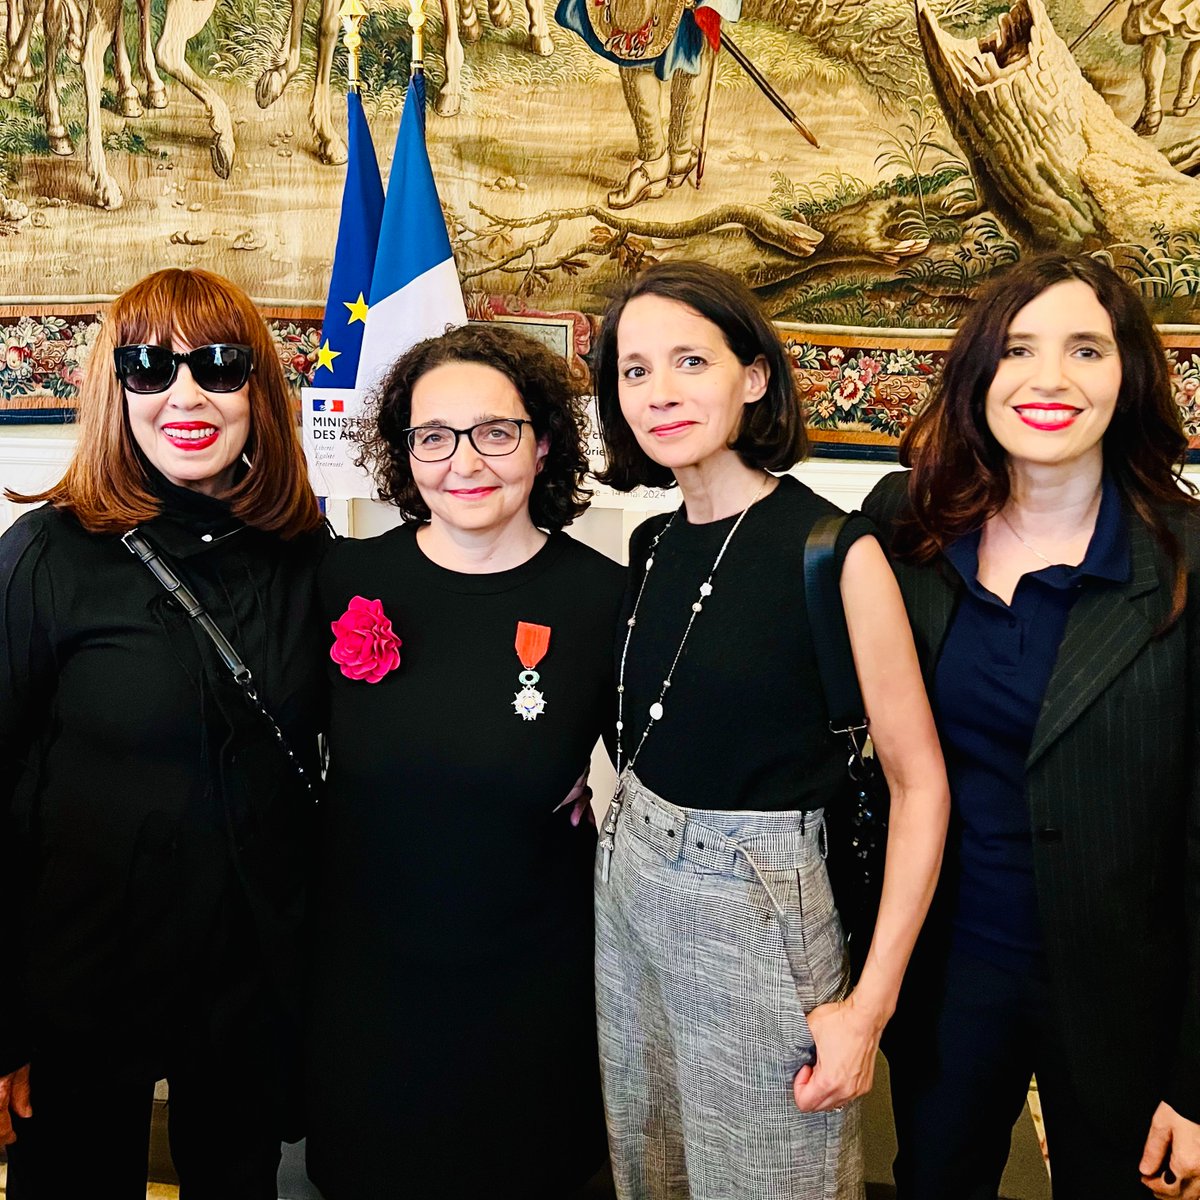 Félicitations à @MurielDomenach, ambassadrice de France à l'OTAN, qui a reçu les insignes de Chevalier de la Légion d’honneur des mains du ministre Sébastien Lecornu. 🎖🇫🇷 🇪🇺
Muriel Domenach est membre de notre conseil féminin depuis sa création. Elle est la première diplomate